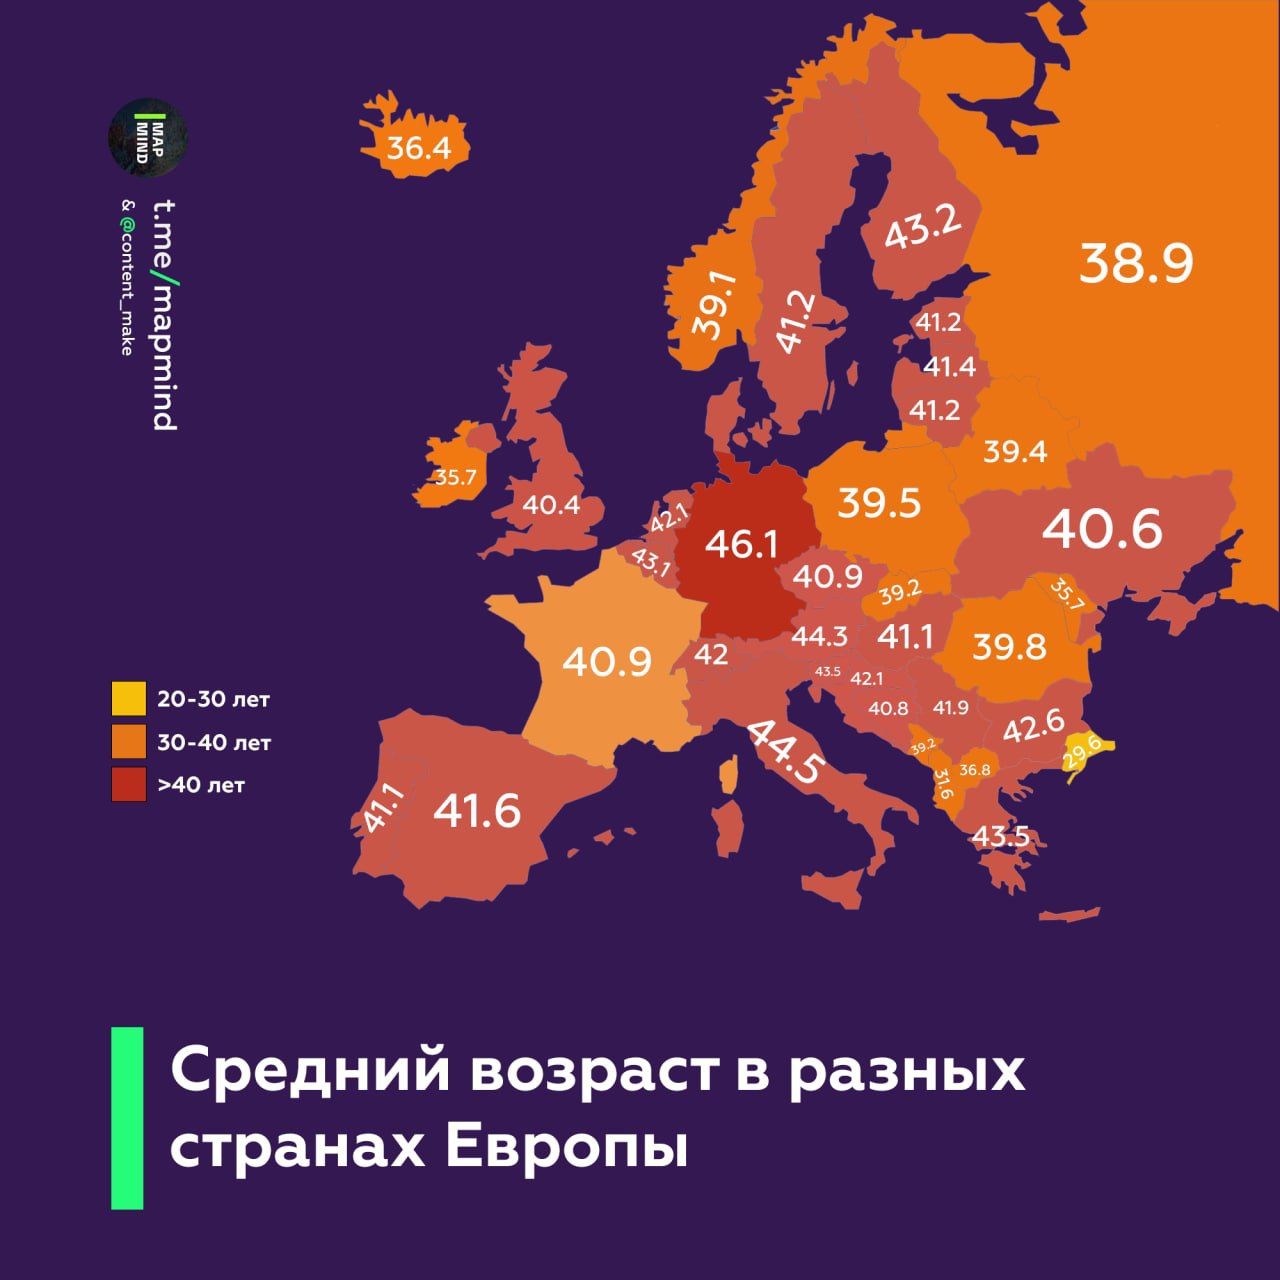 Средний возраст в странах Европы